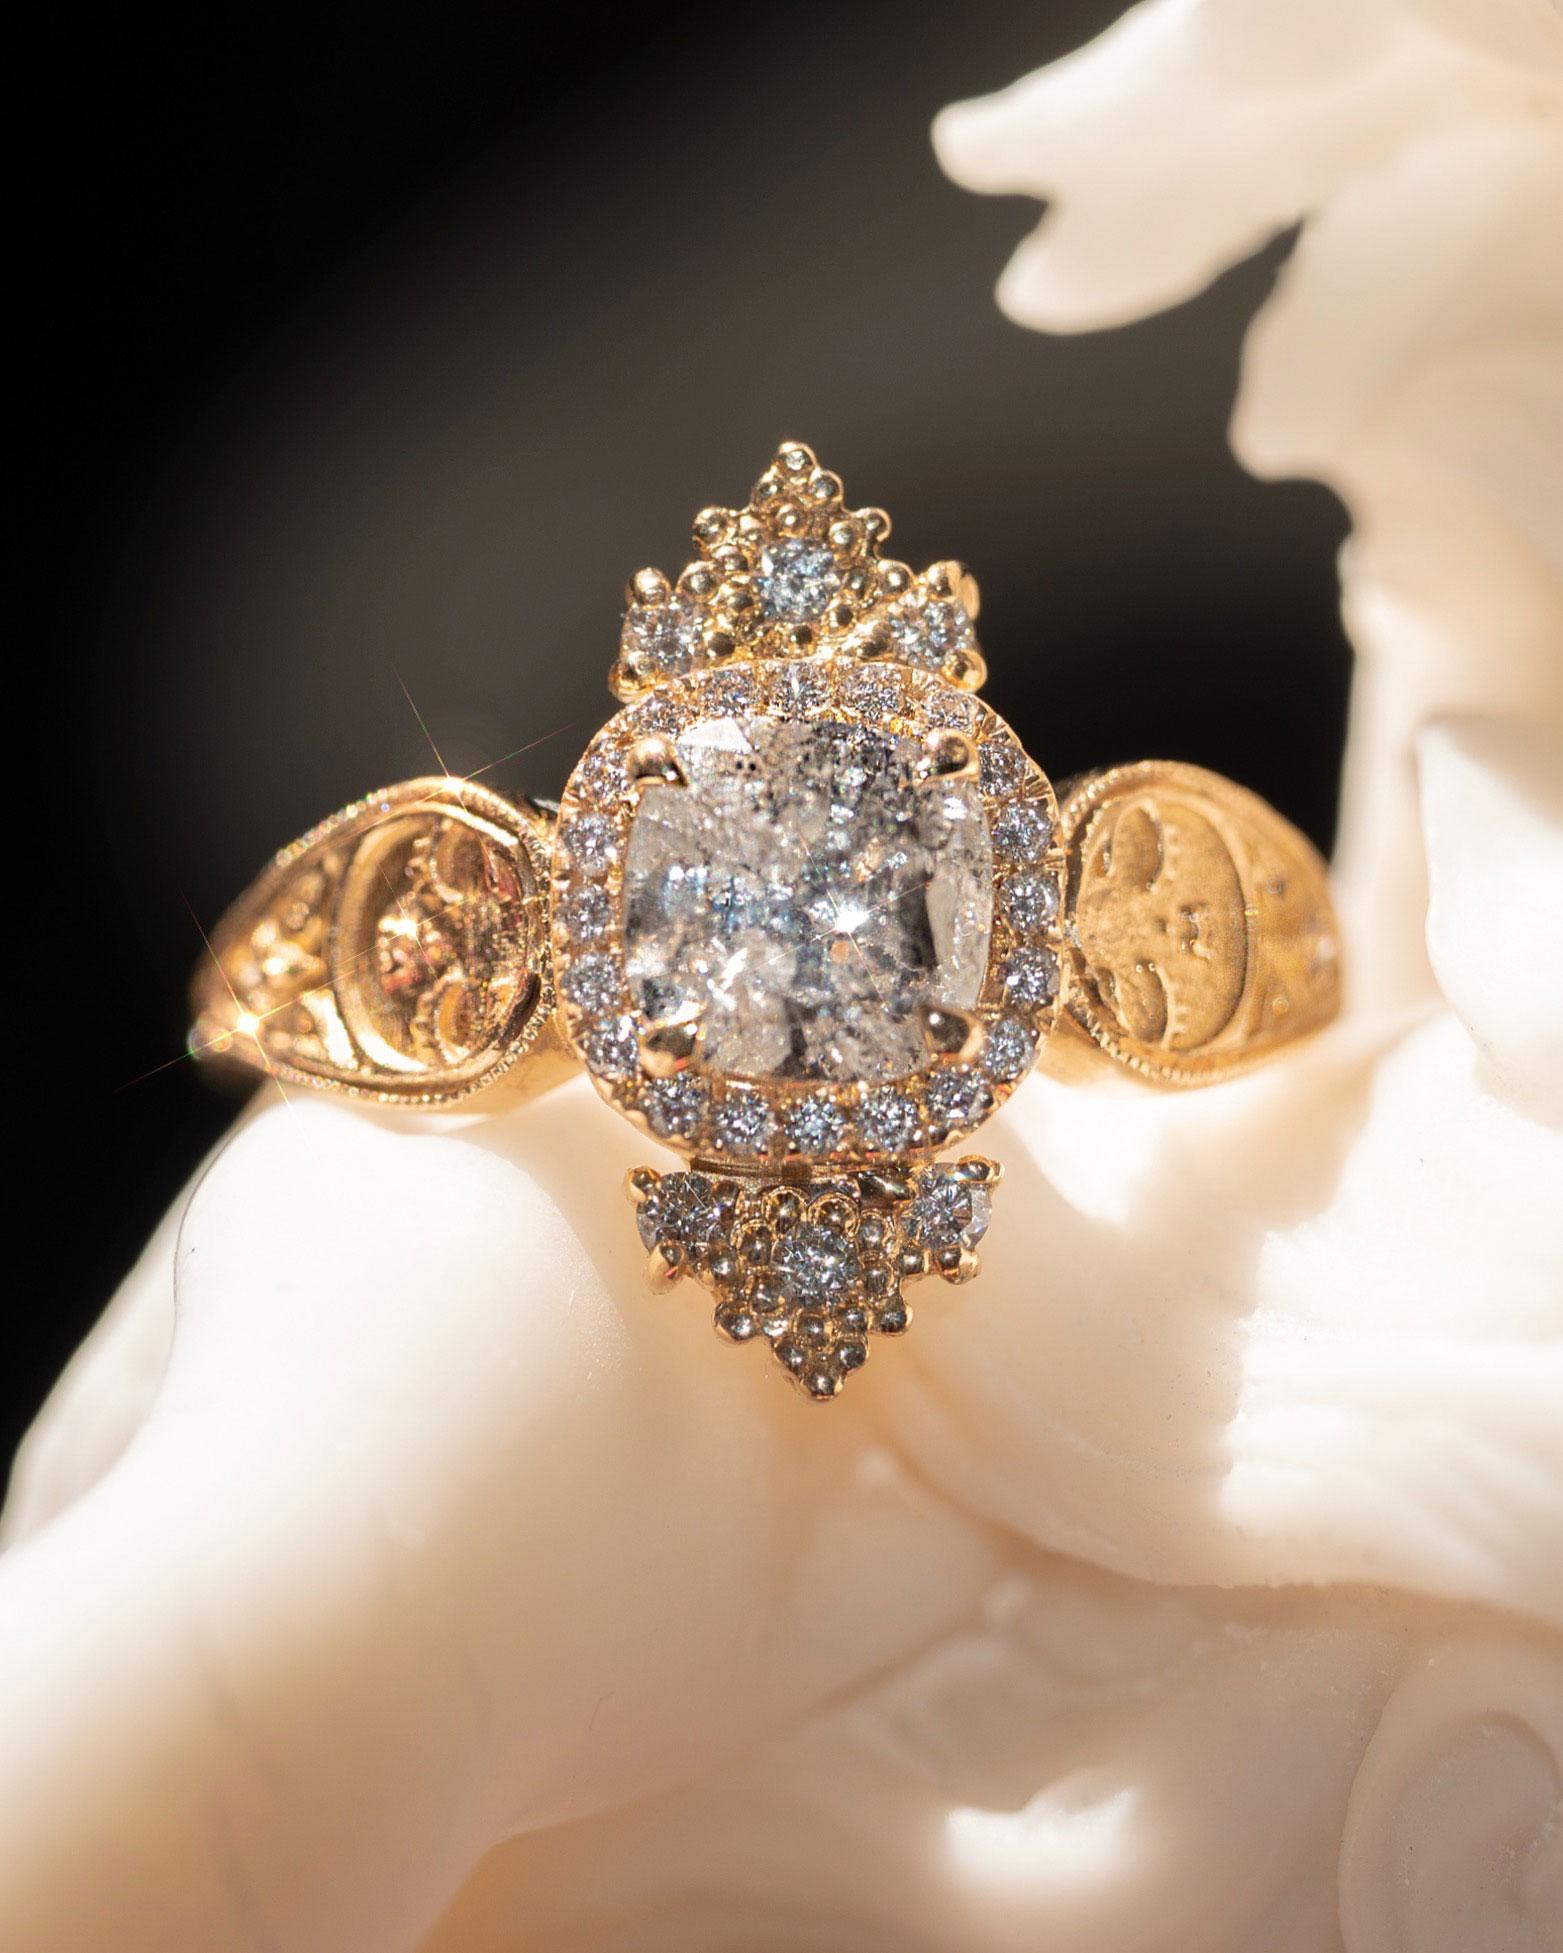 En vente :  Bague Dreamers de 1 carat de diamants certifiés GIA, taille coussin, pavé français 13